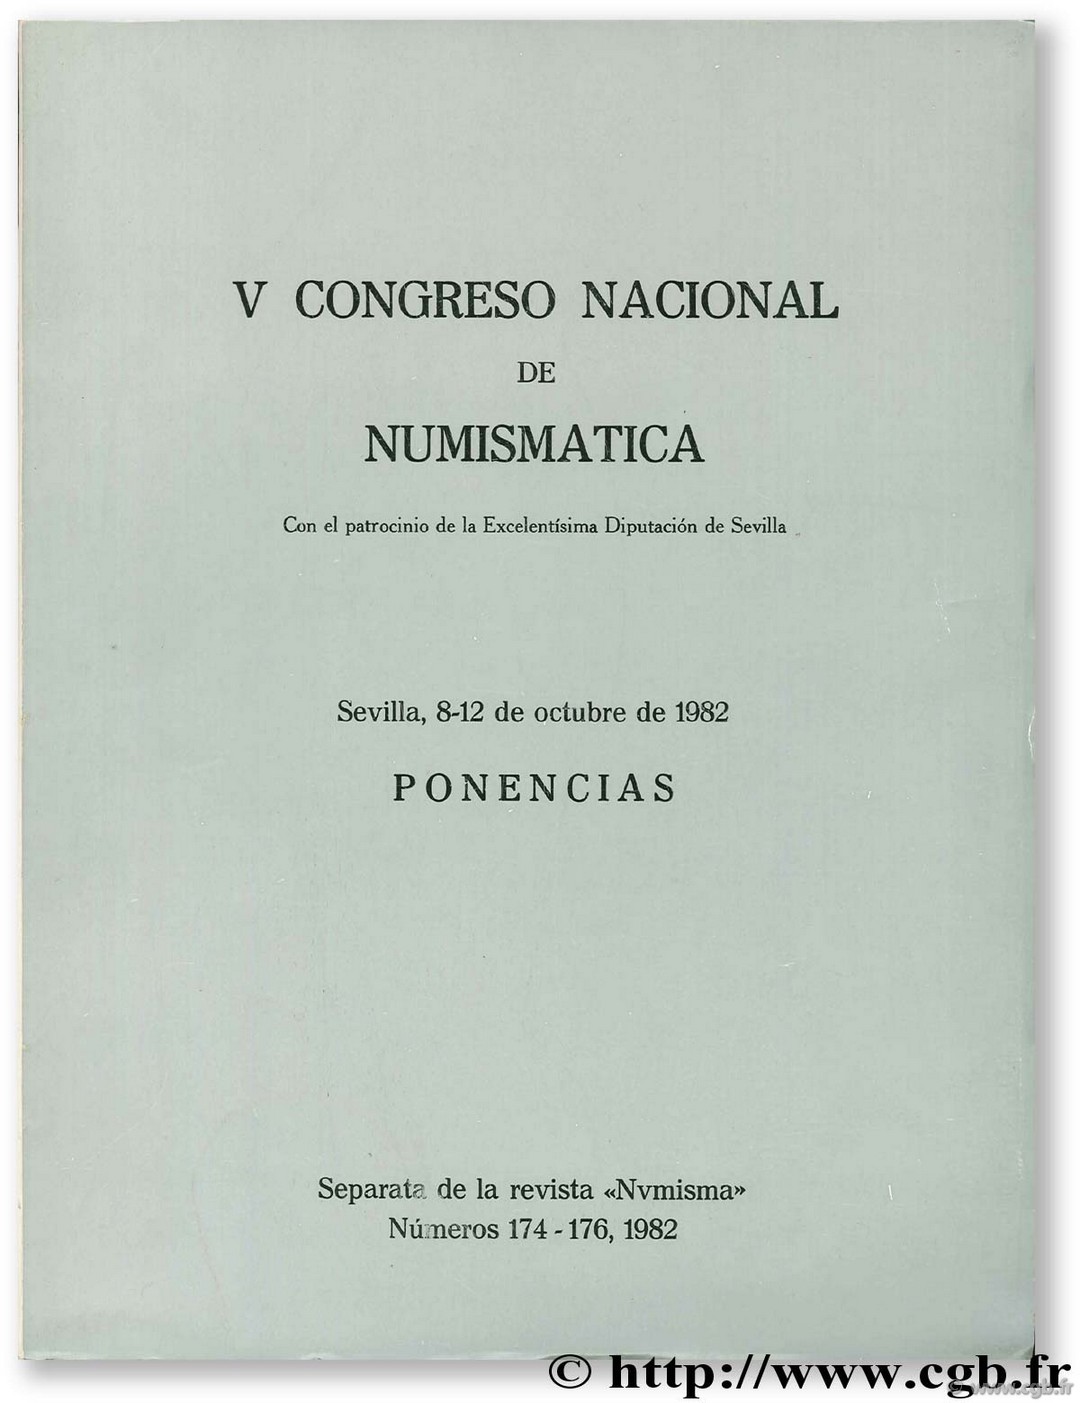 V Congreso Nacional de numismatica. Ponencias. Sevilla 8-12 de octubre de 1982 